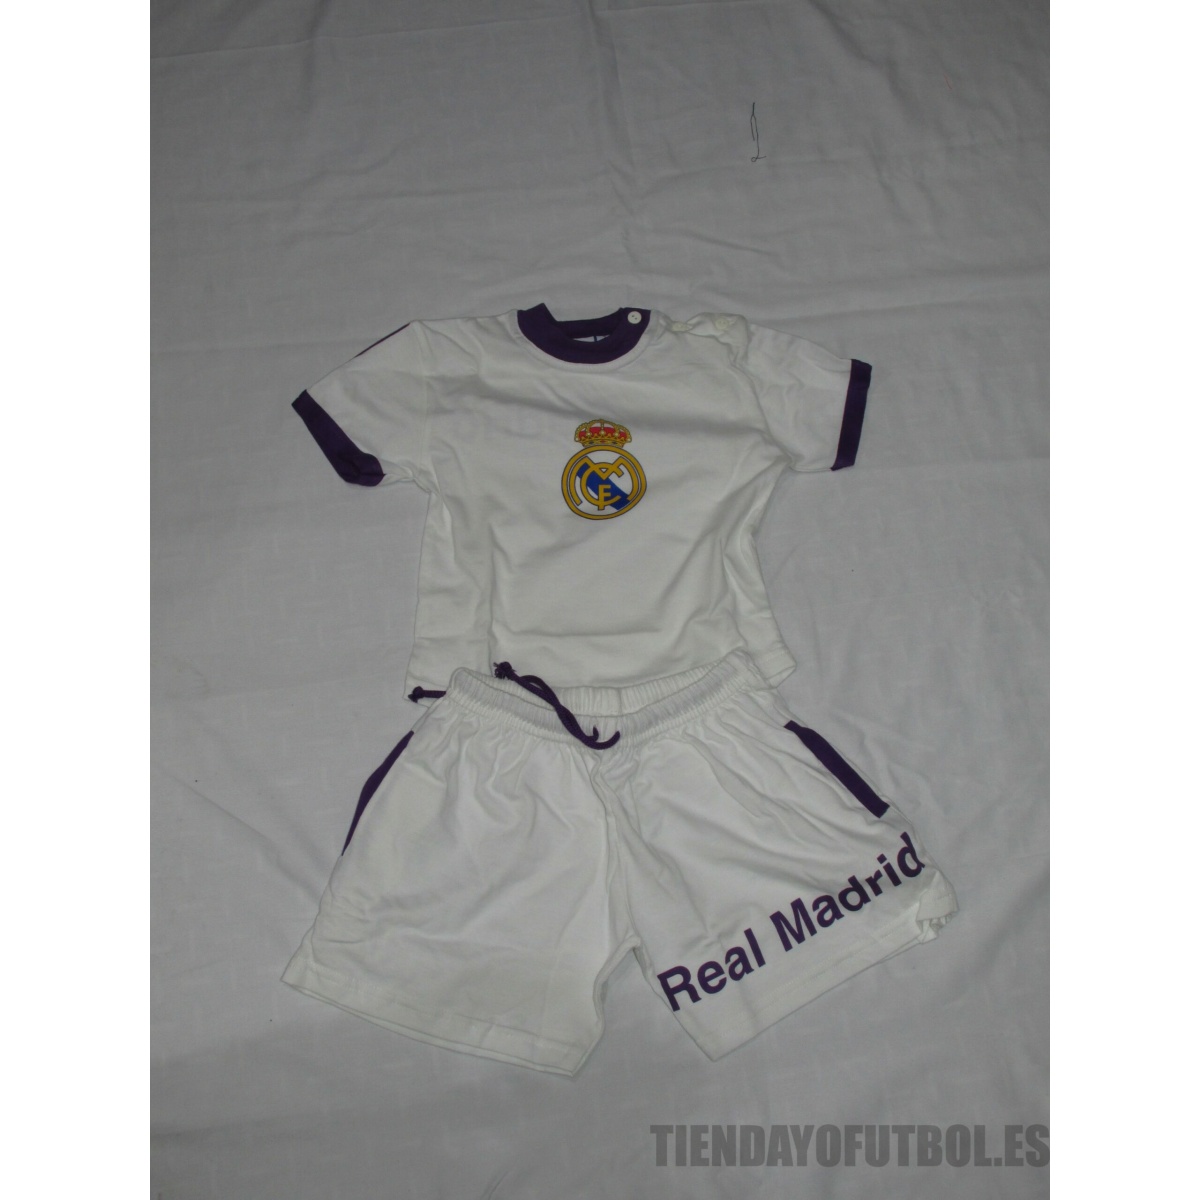 Pijama verano Junior Real Madrid CF blanco -morado - Tienda Yo Futbol